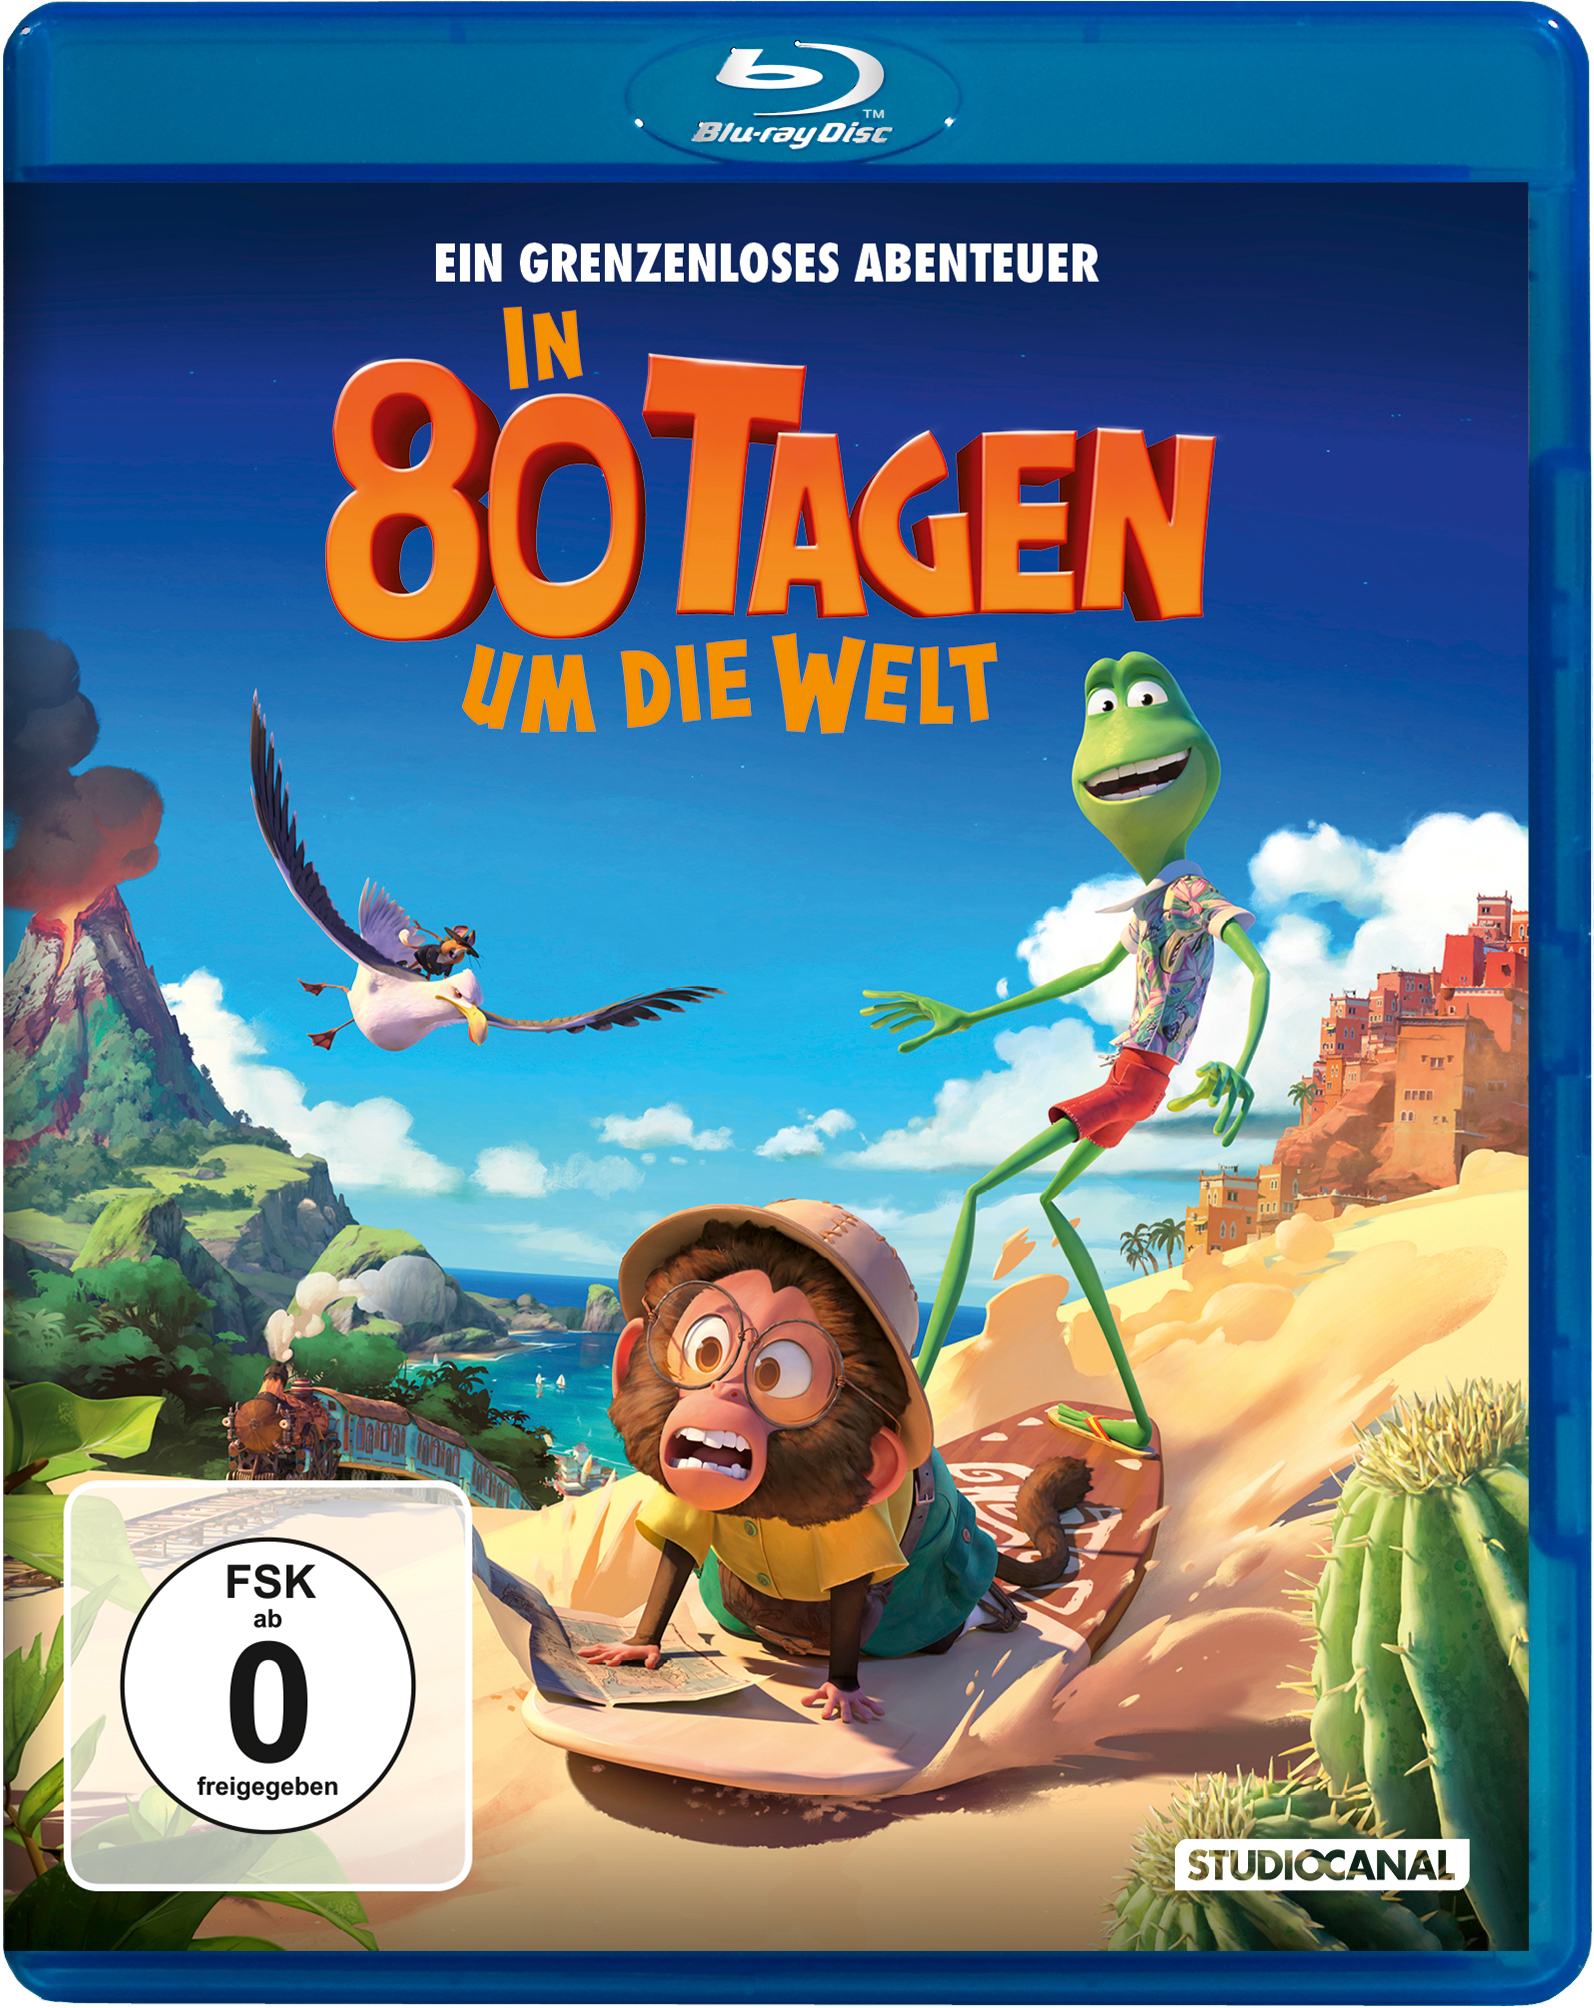 In 80 Tagen um die Welt (Blu-ray) Cover